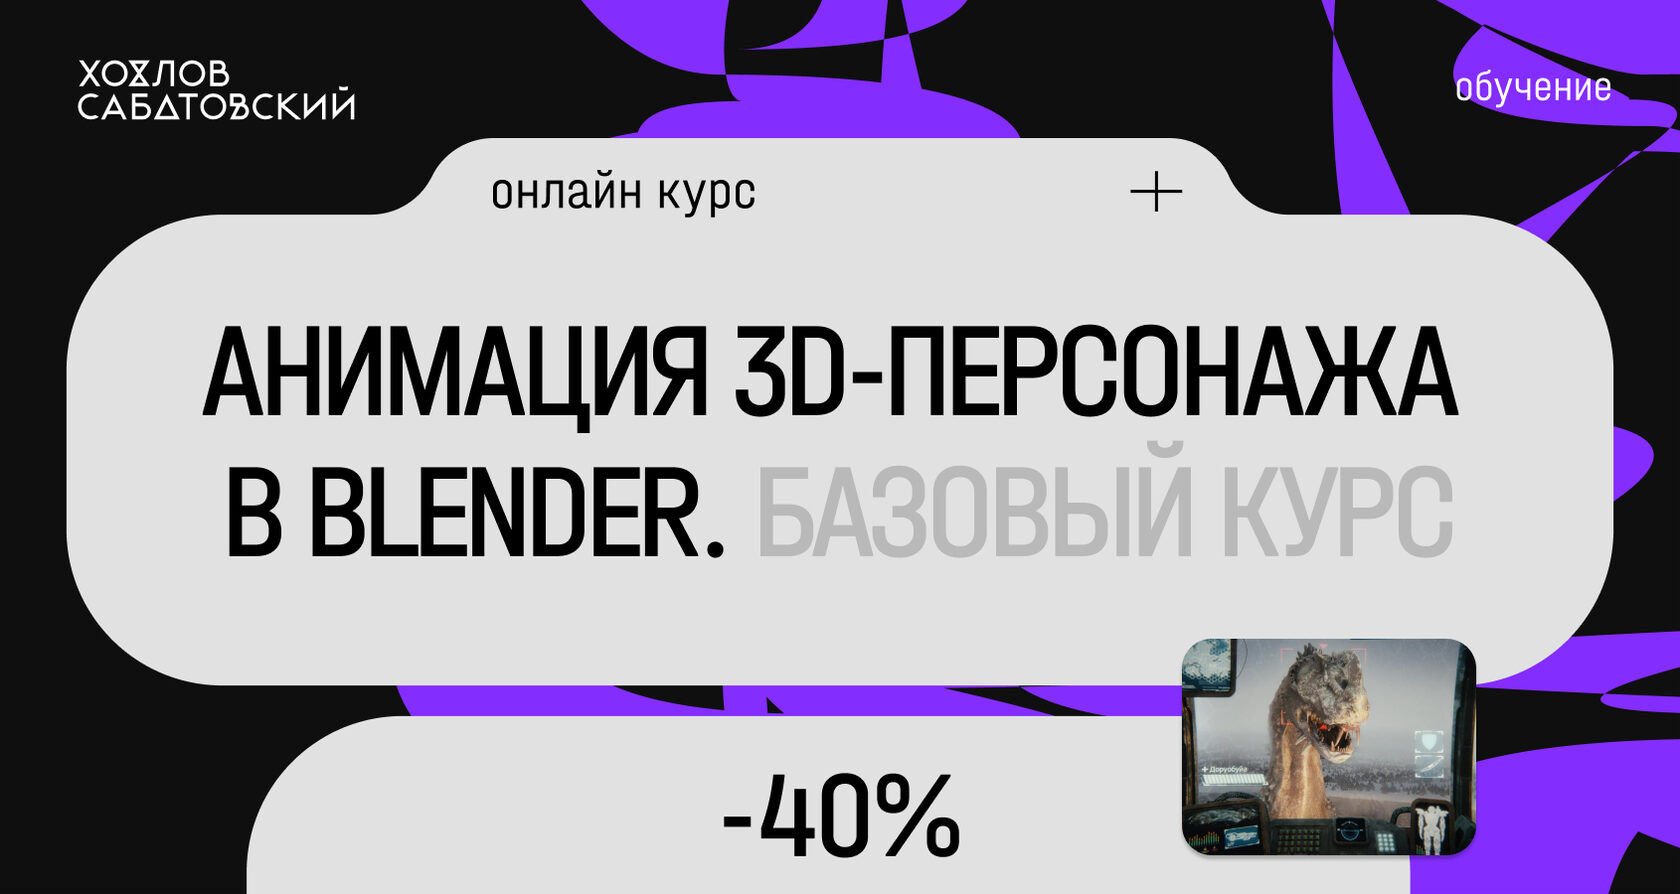 Aнимация 3D-персонажа в Blender с нуля (Курсы Хохлова Сабатовского)